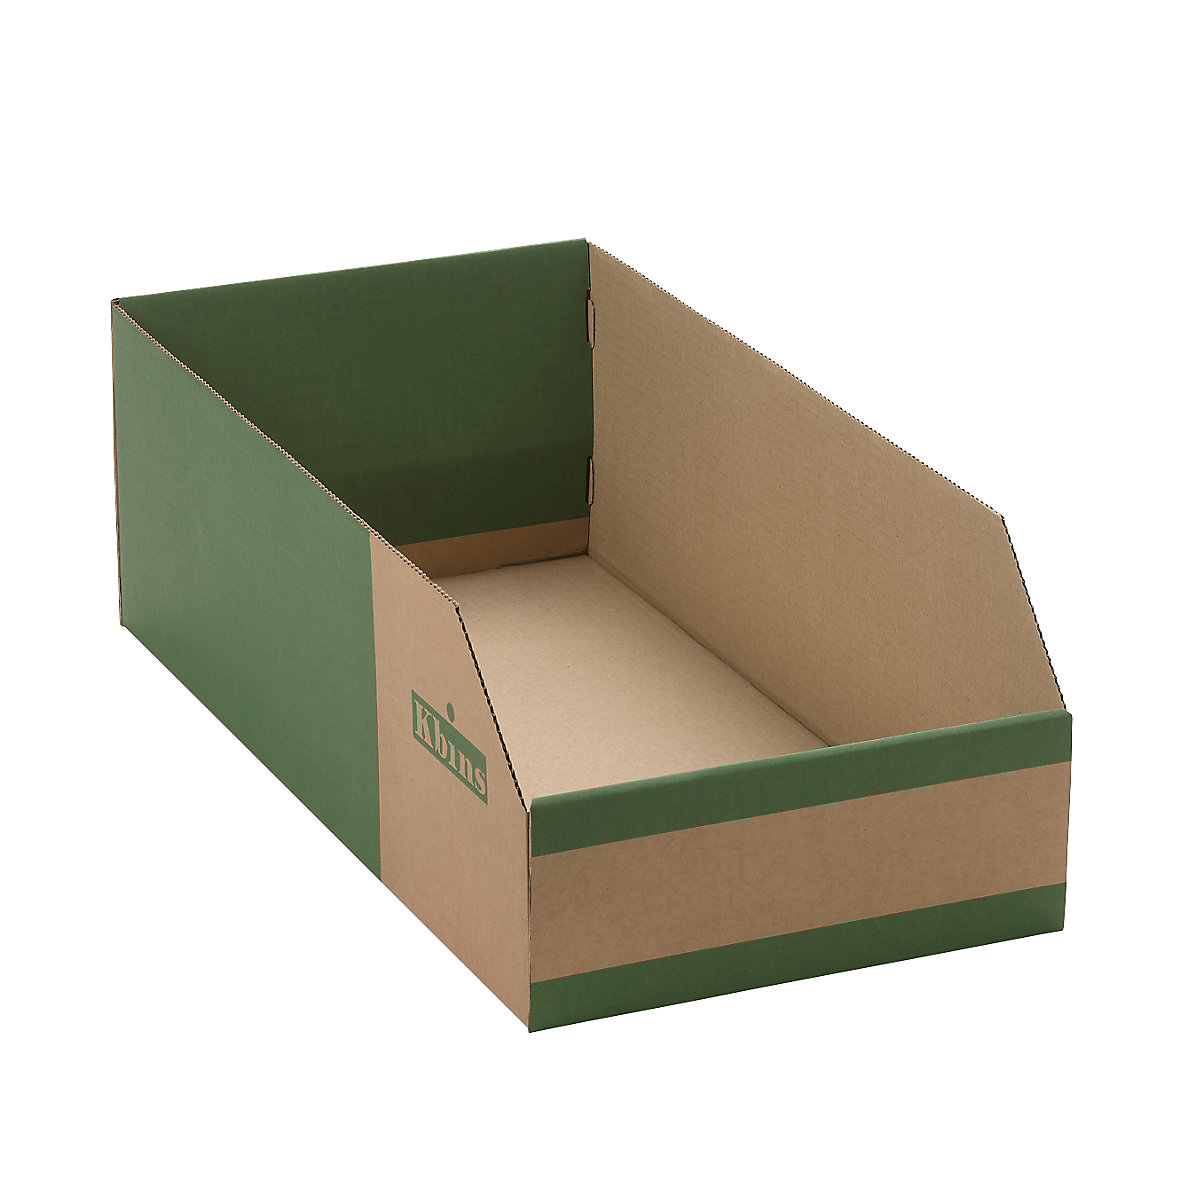 Karton állványdoboz, egyrétegű és összehajtható kivitel, cs. e. 25 db, h x szé x ma 500x300x200 mm-5